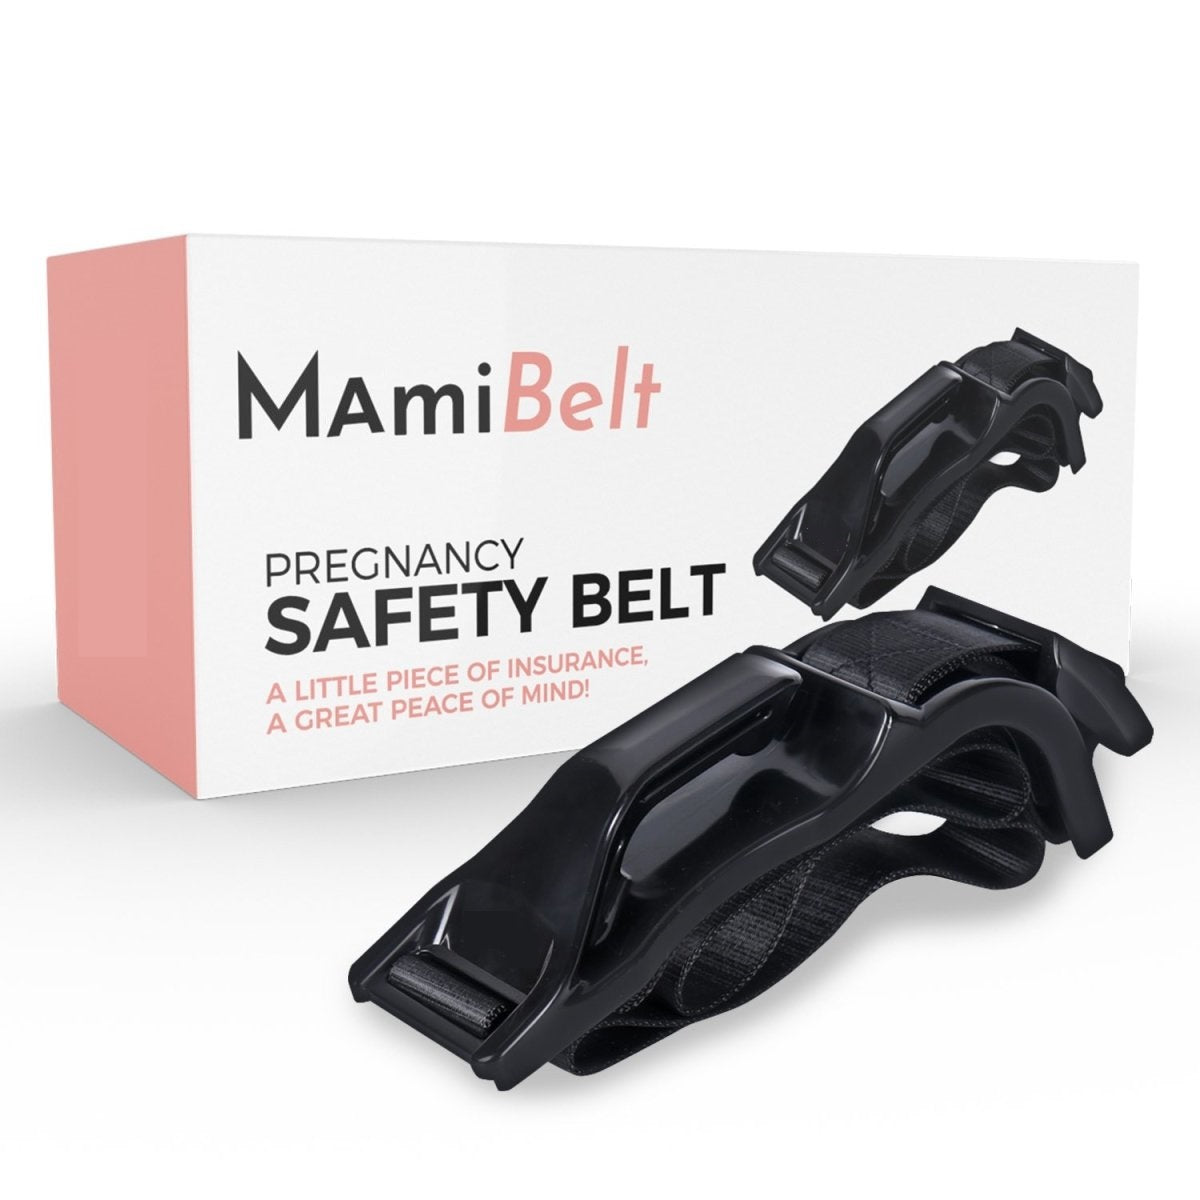 MamiBelt: Cinturón de seguridad para embarazadas